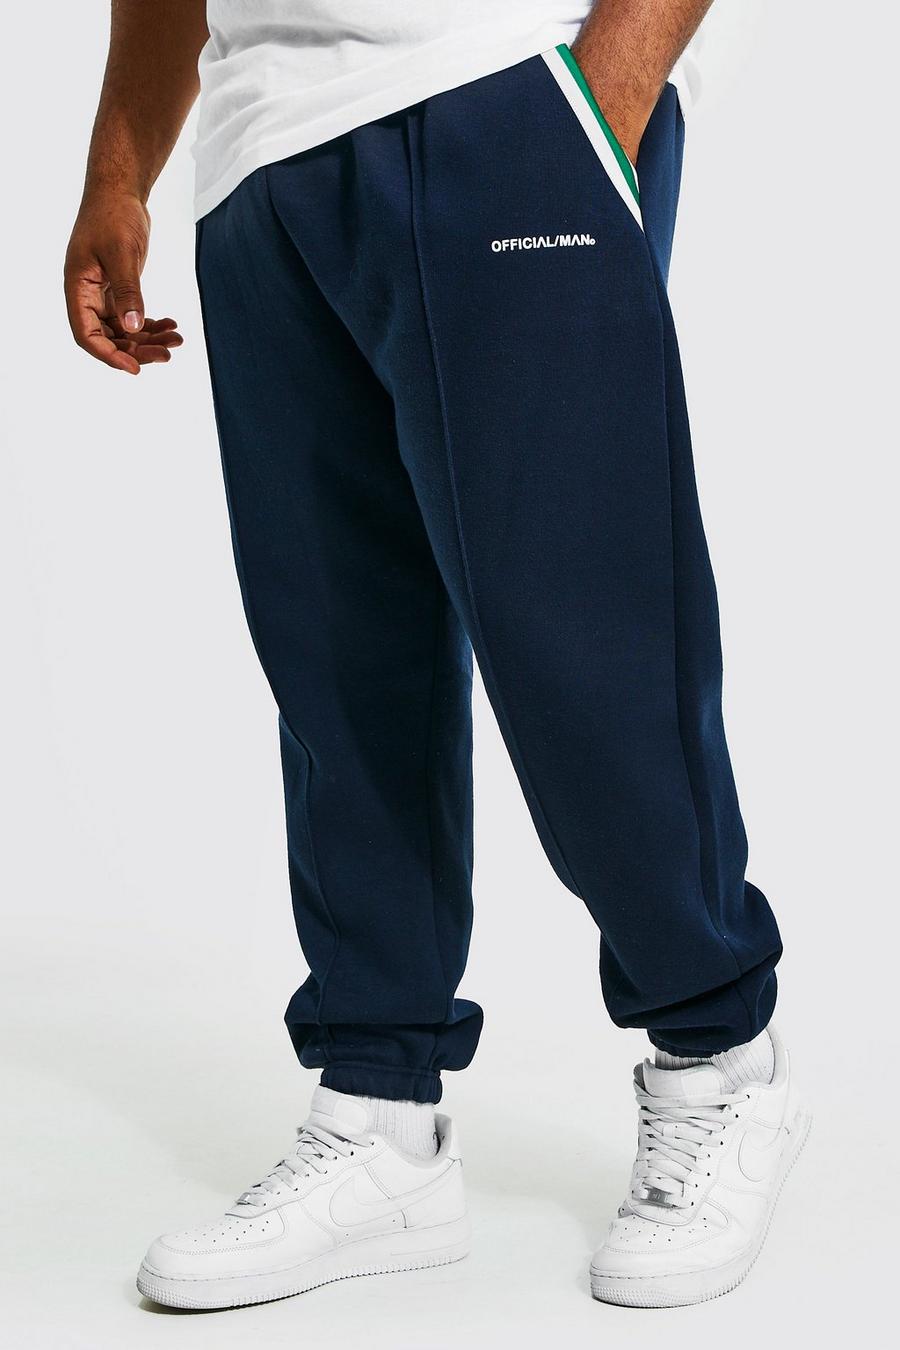 Pantalón deportivo Plus ajustado con bolsillos, franja lateral y alforza, Navy blu oltremare image number 1